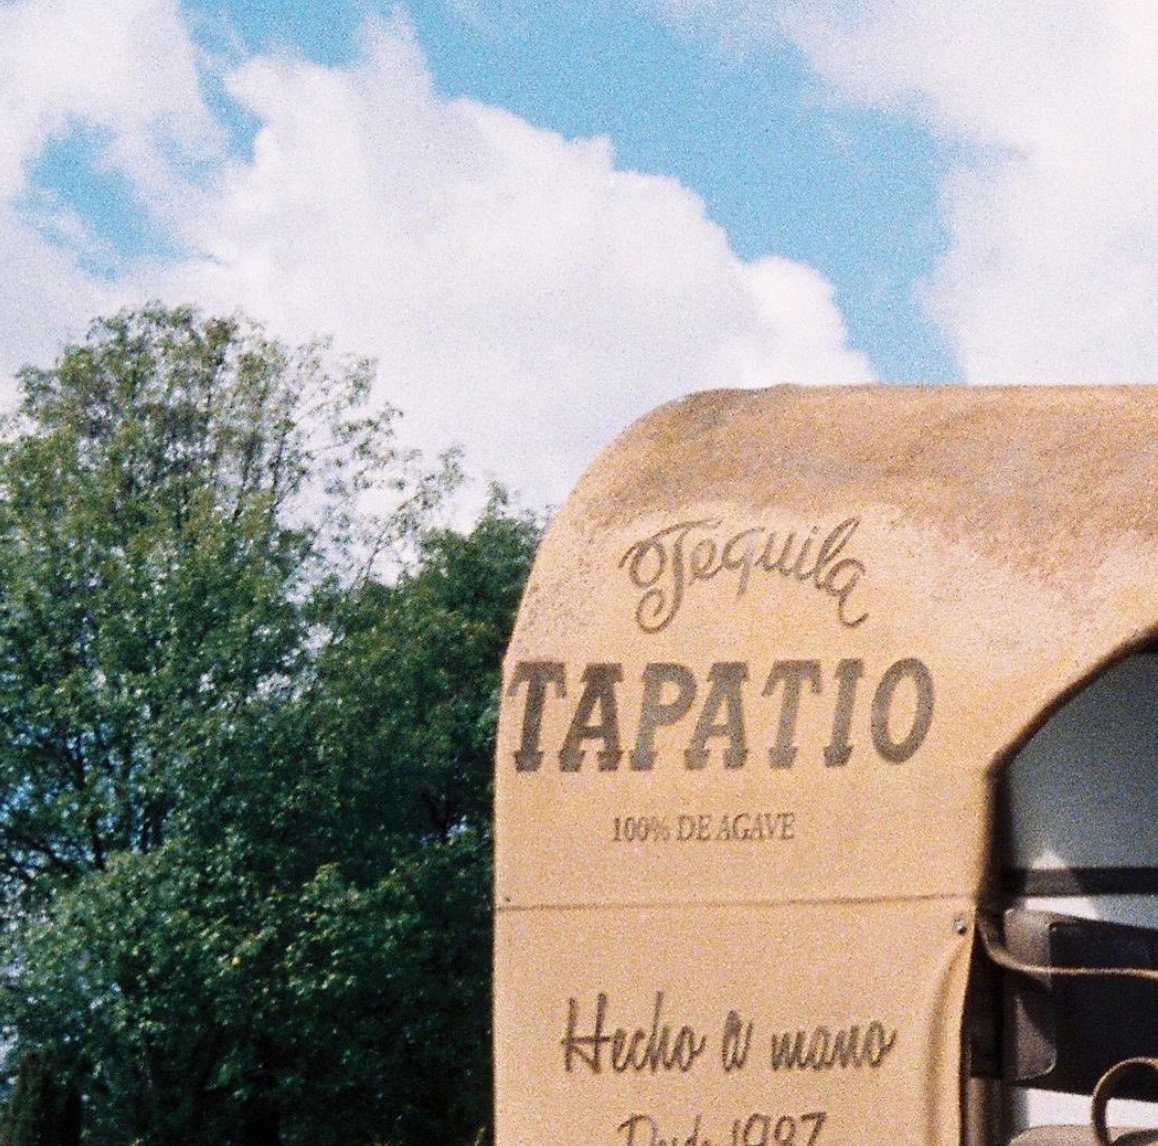 Tapatio Añejo Tequila